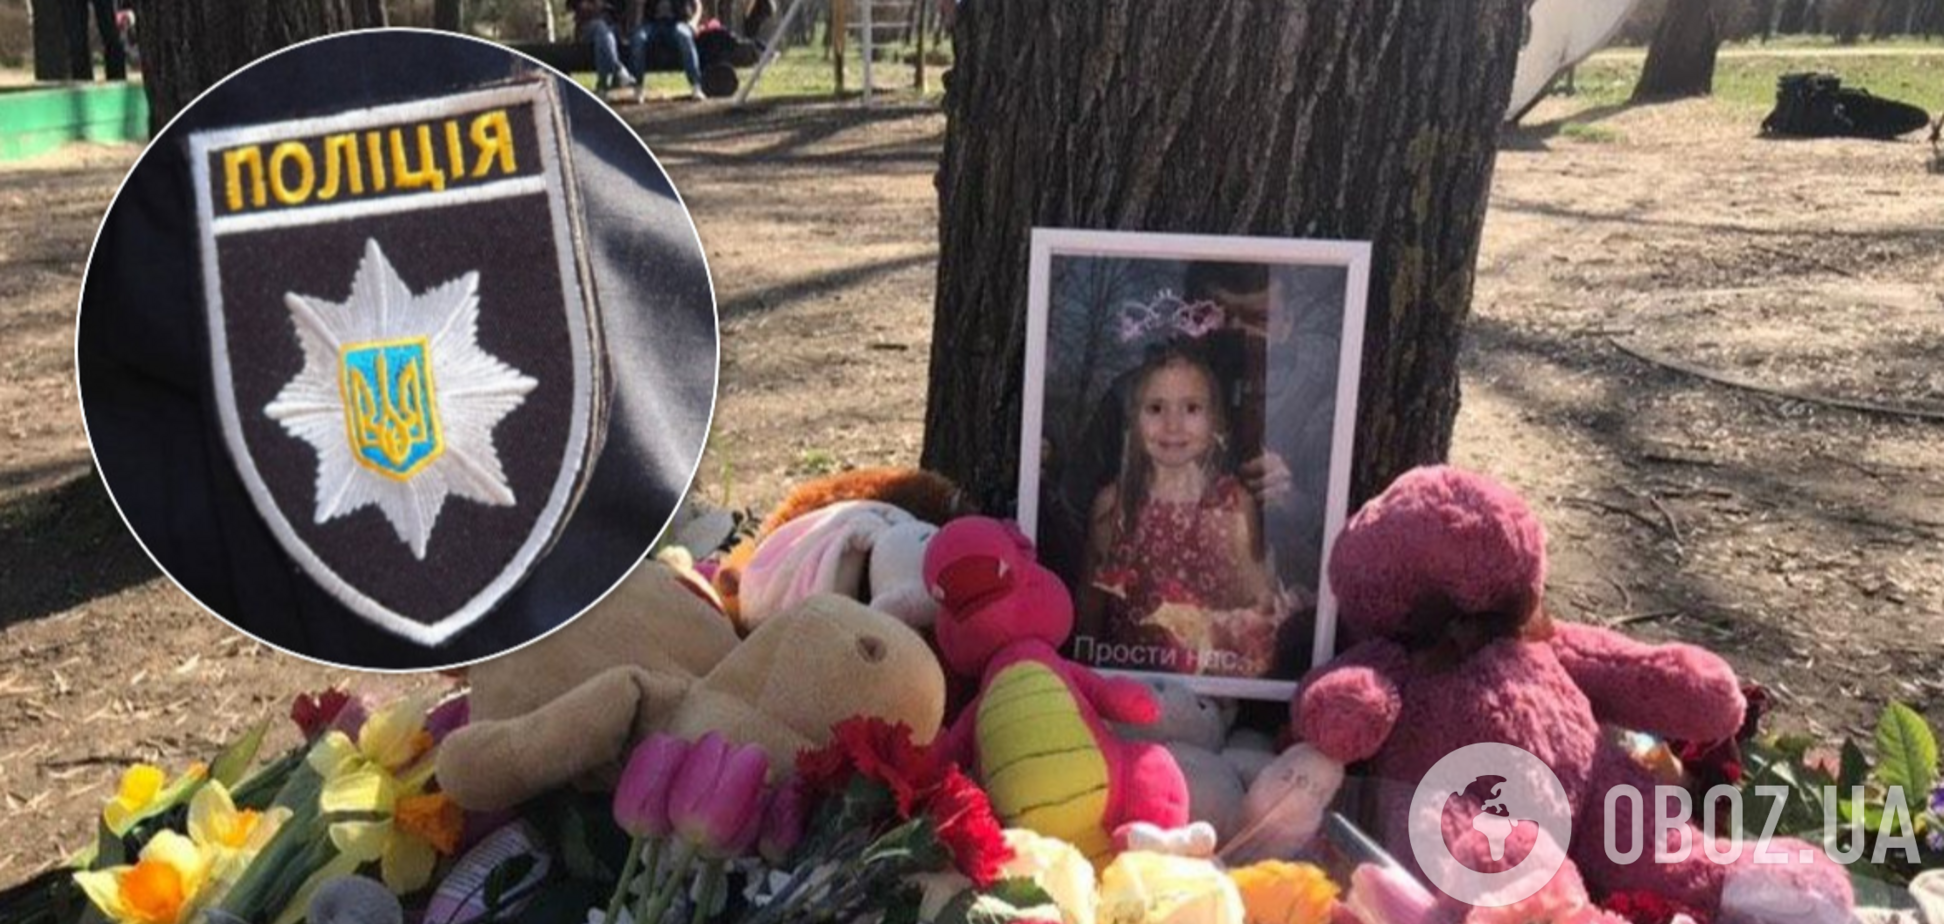 В Запорожье статуя убила девочку: объявлено первое подозрение